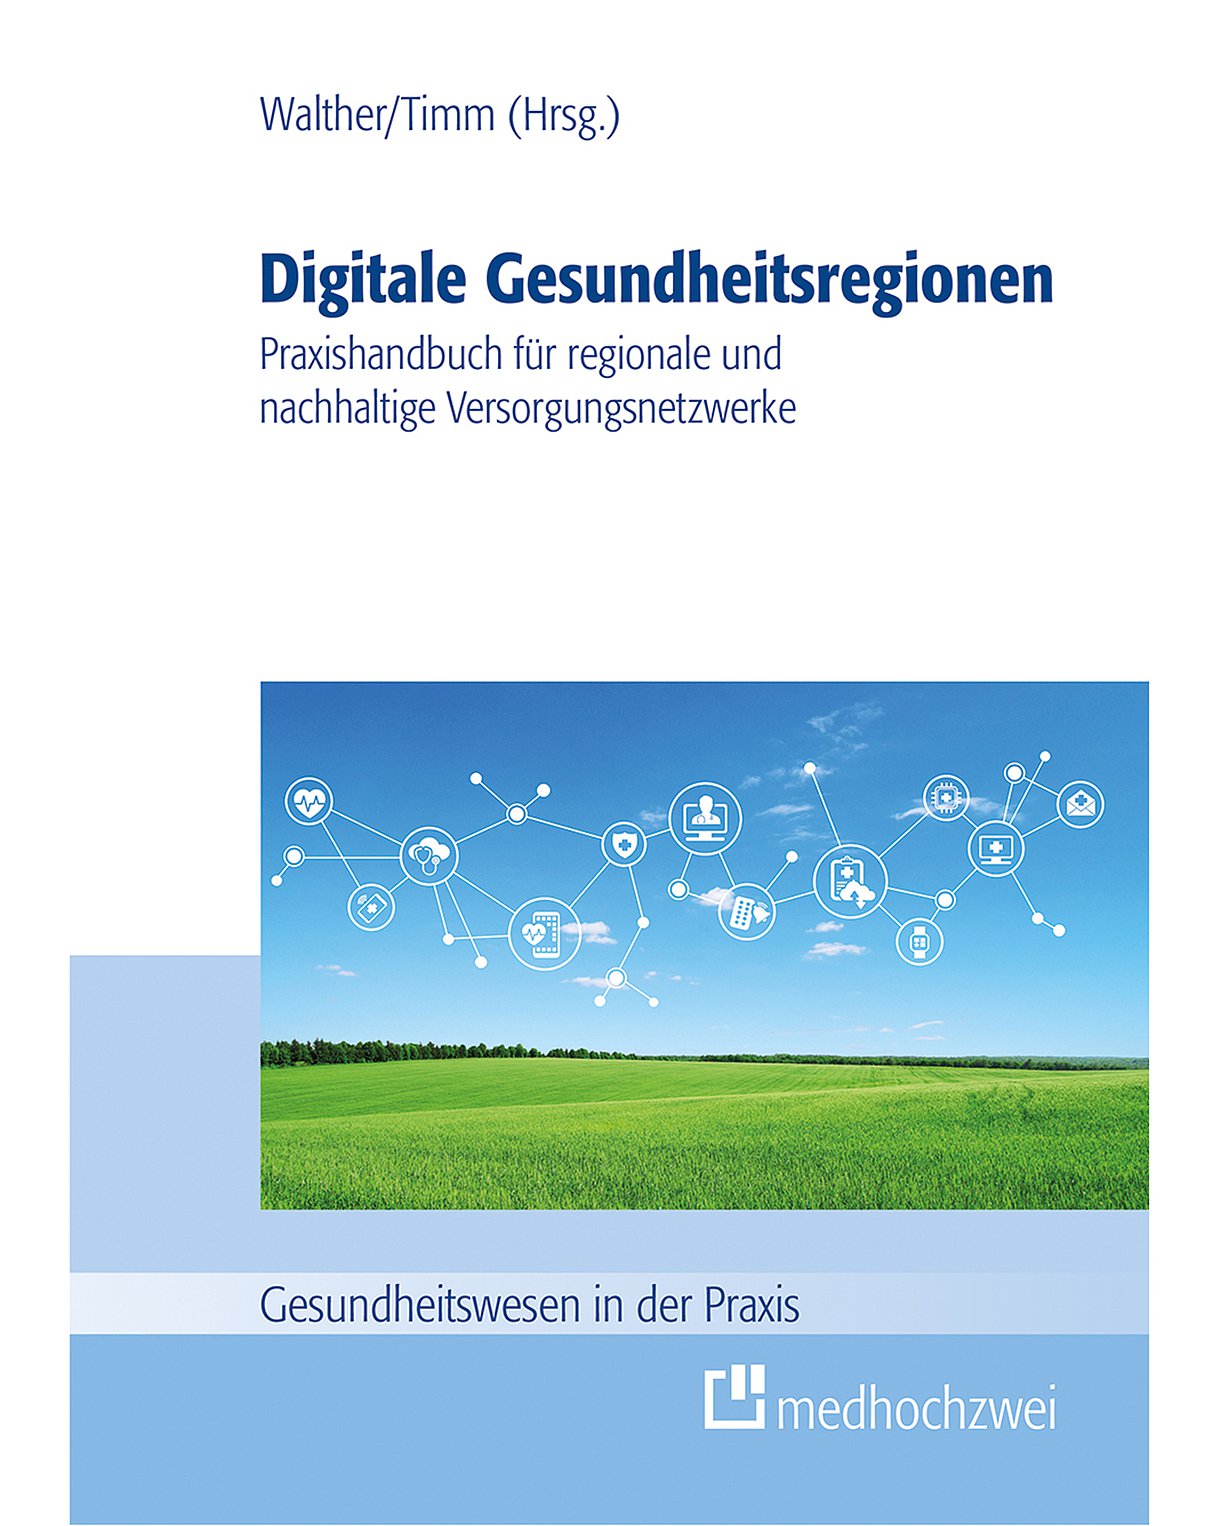 Cover des Buches "Digitale Gesundheitsregionen": Grüne Wiese mit blauem Himmel, in dem digitale Vernetzungsstrukturen zu sehen sind